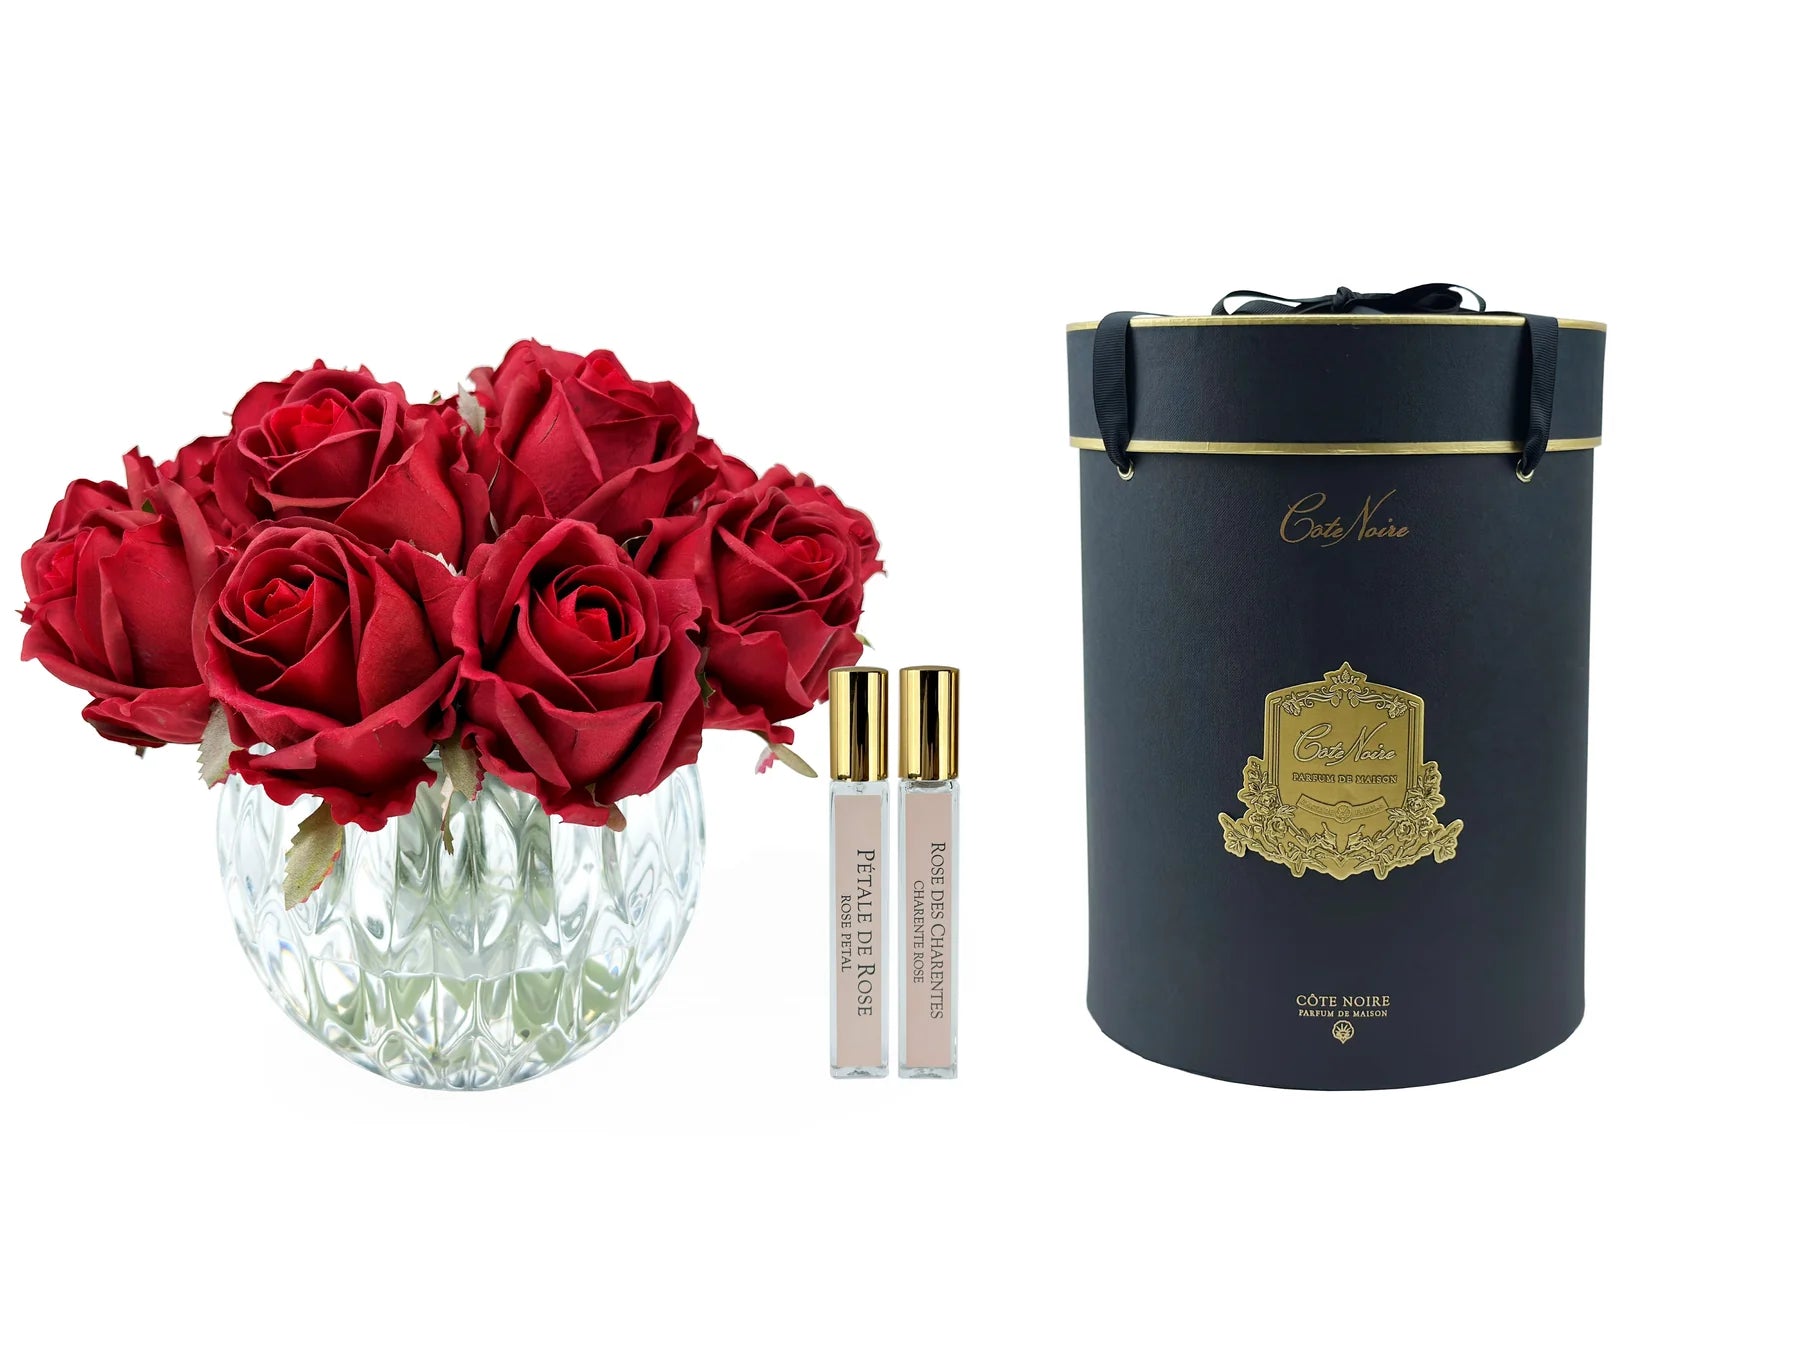 dreizehn rosen in rundem kristallglas, daneben zwei parfumsprays und schwarze geschenkbox